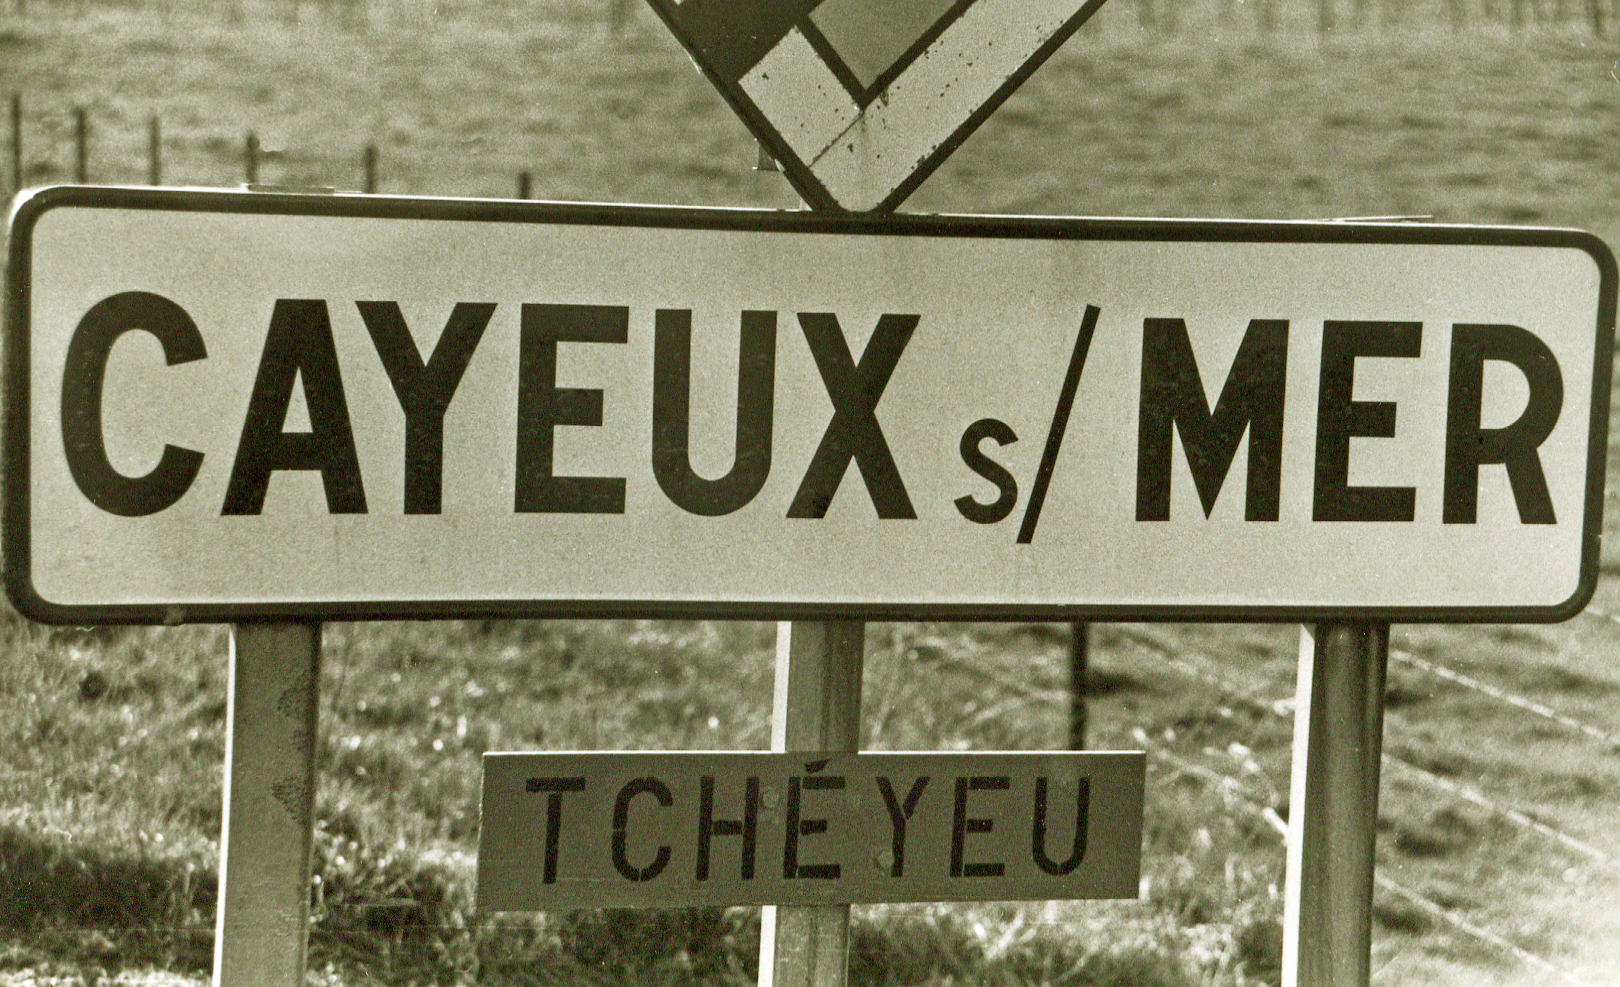 Tcheyeu